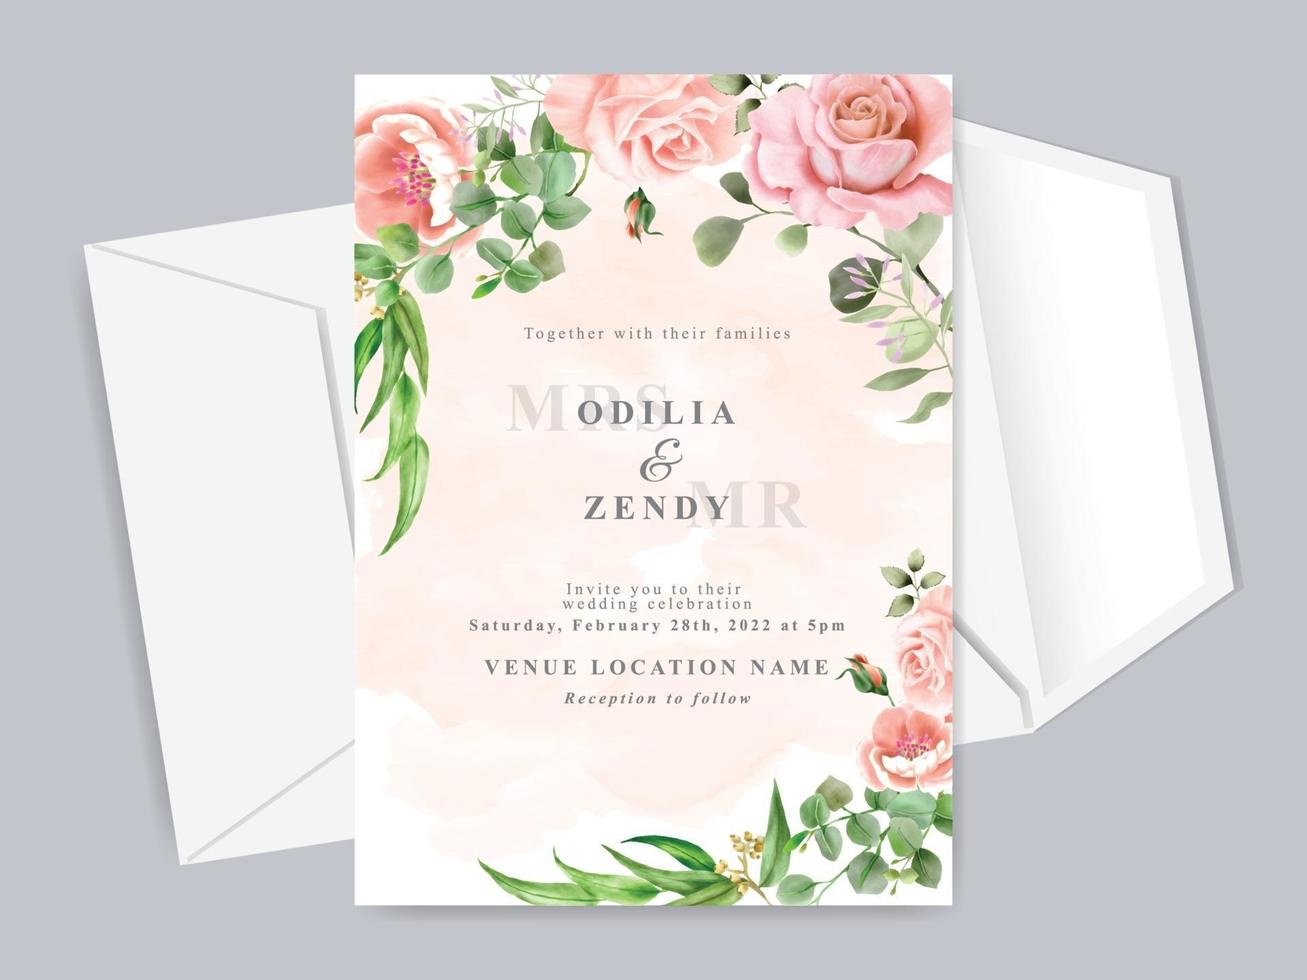 schöne Blumenhand gezeichnete Hochzeitseinladungskartenschablone vektor